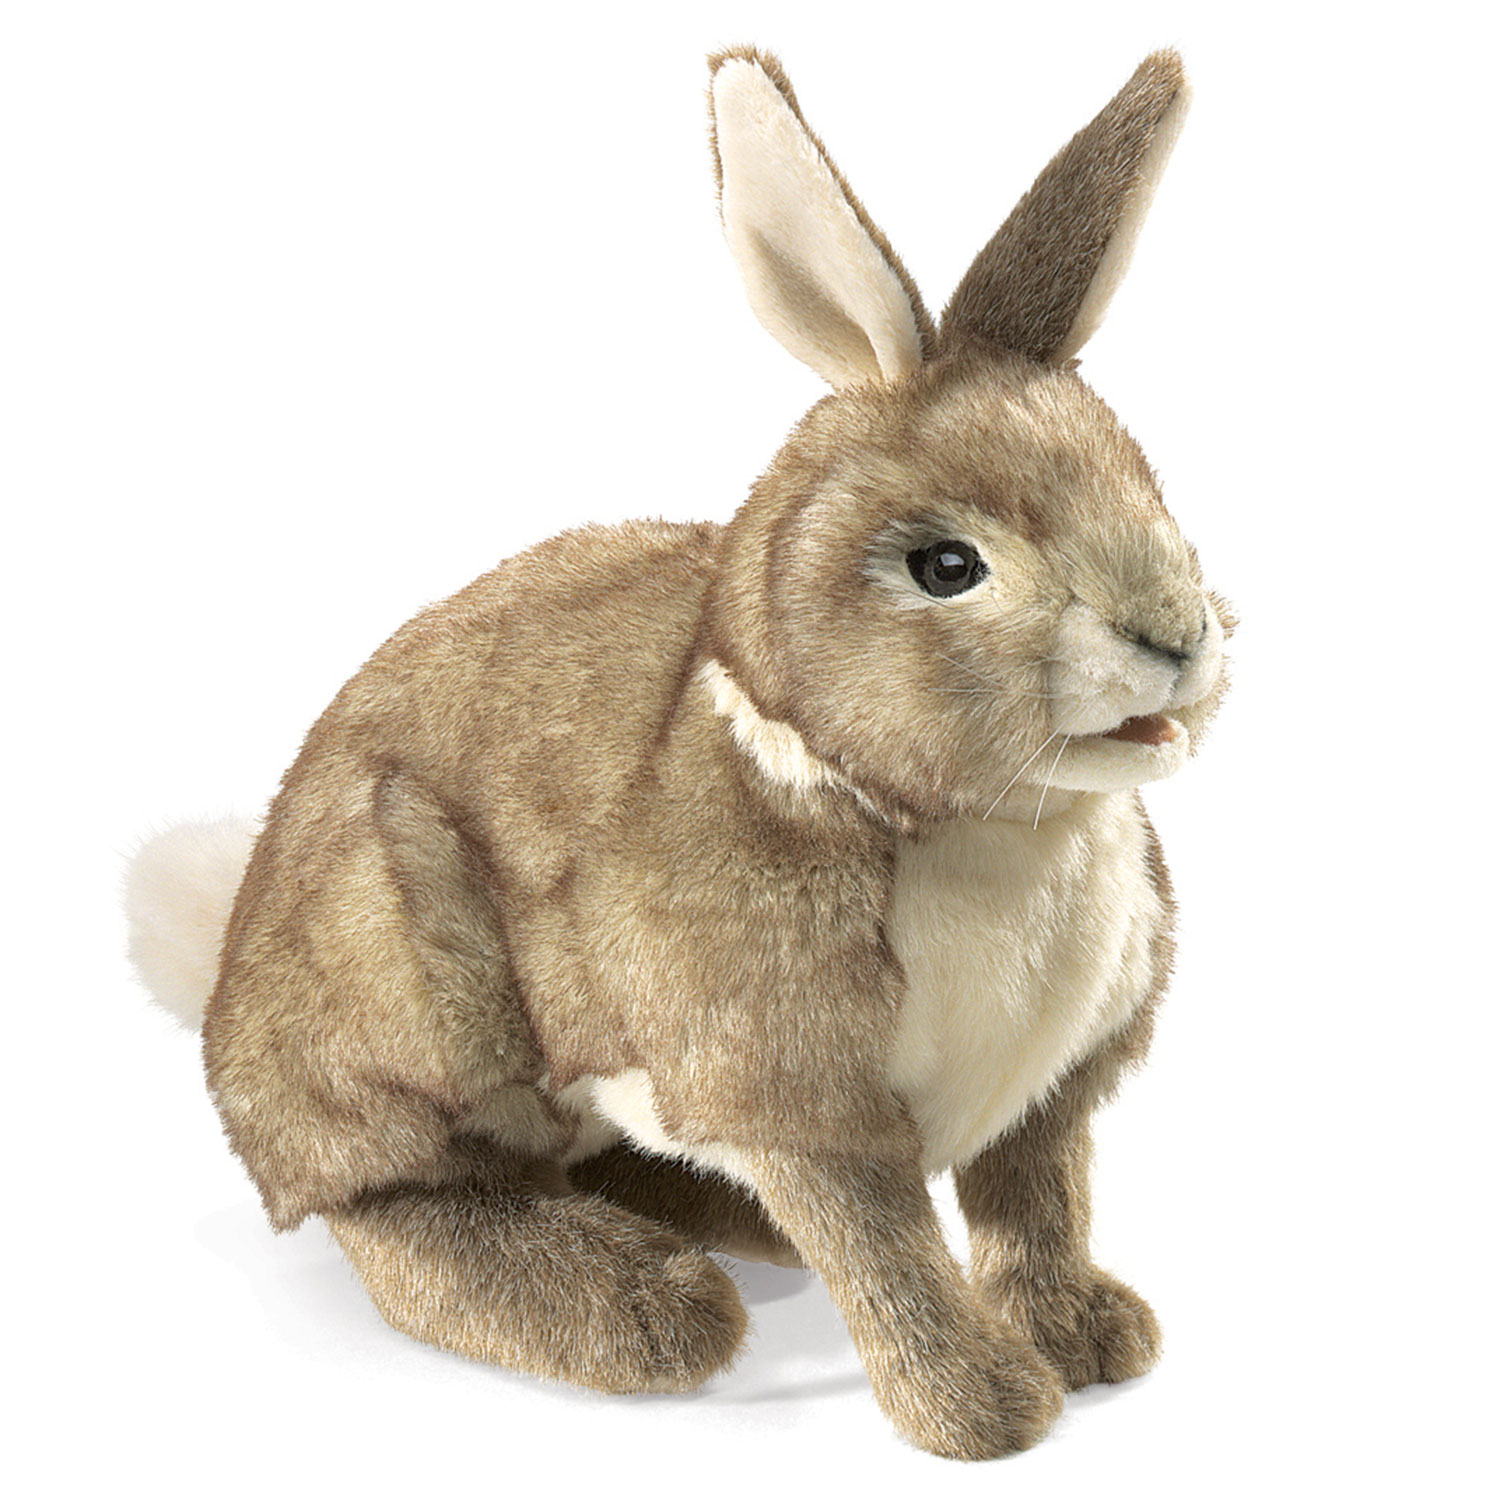 Baumwollschwanz-Kaninchen / Rabbit, Cottontail